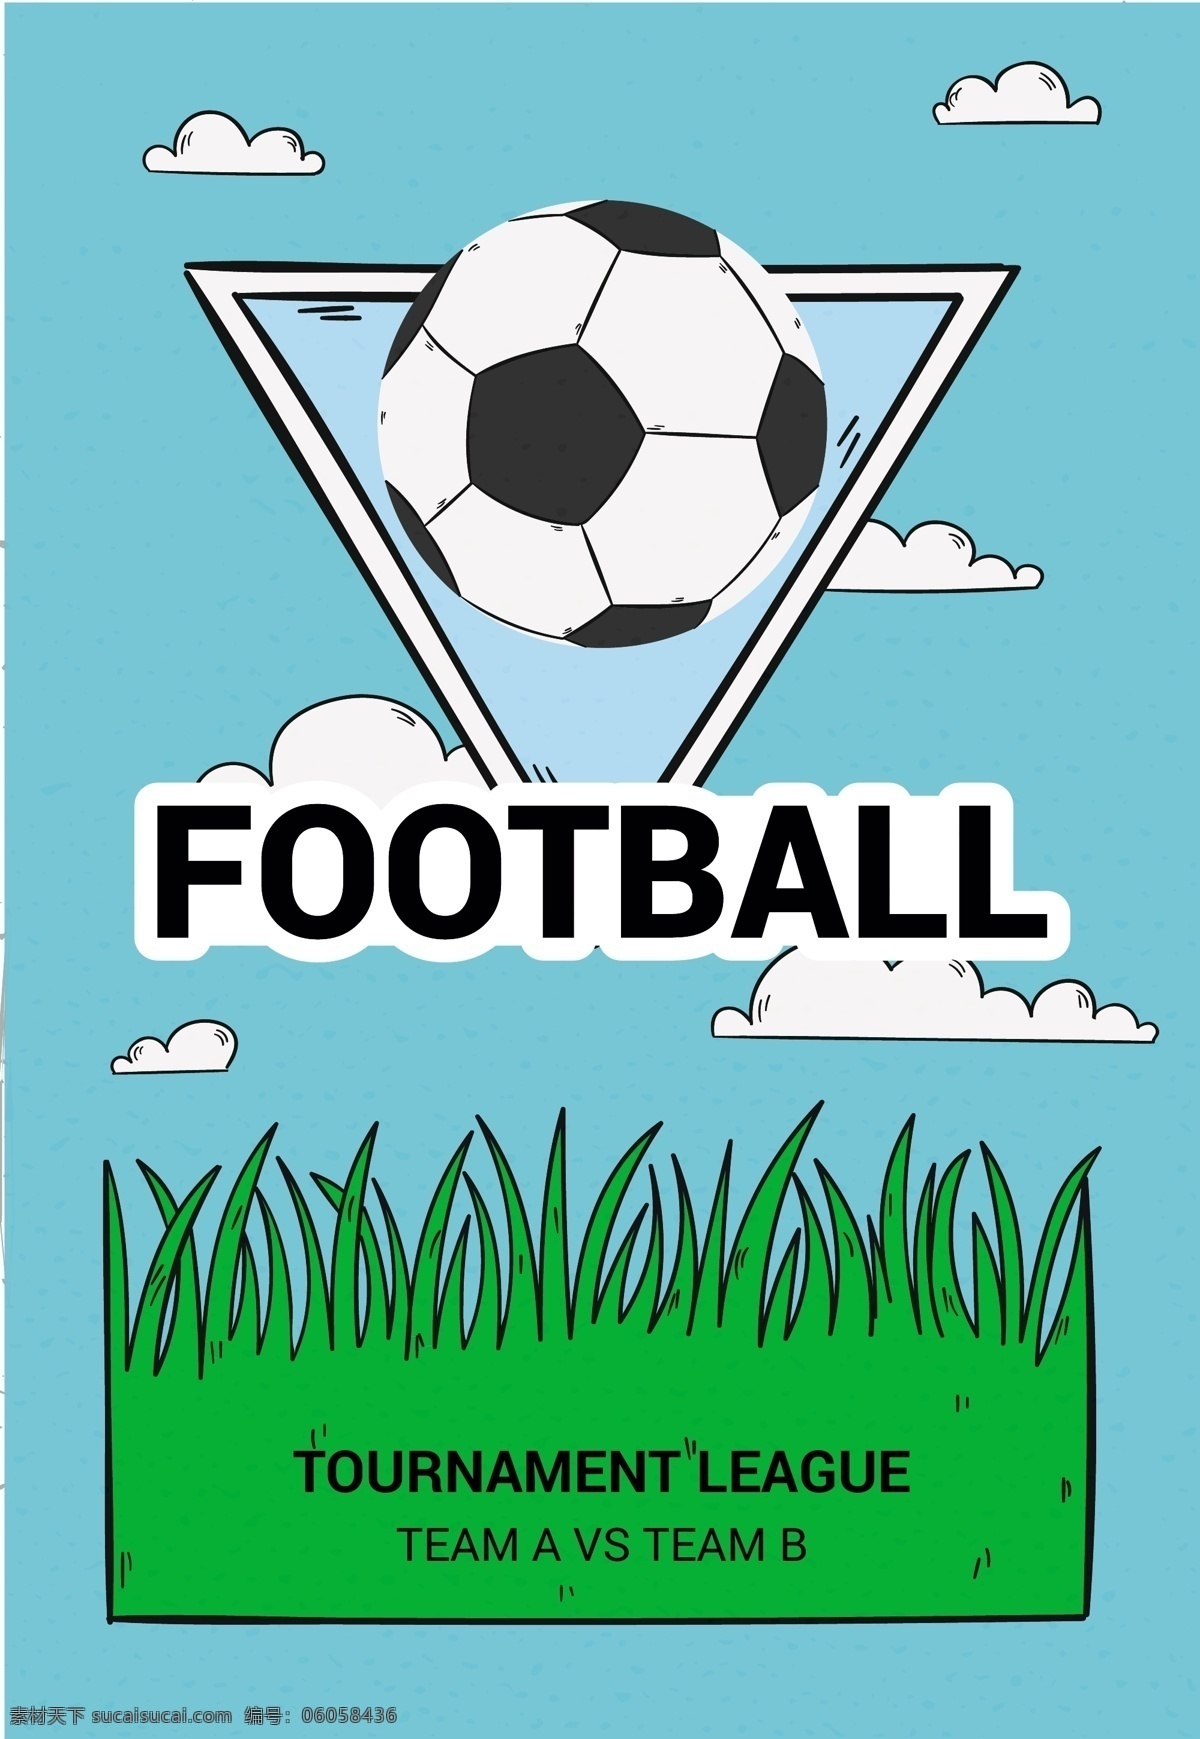 蓝天 白云 下 足球 元素 蓝天白云 足球素材 足球矢量图 足球比赛 足球设计